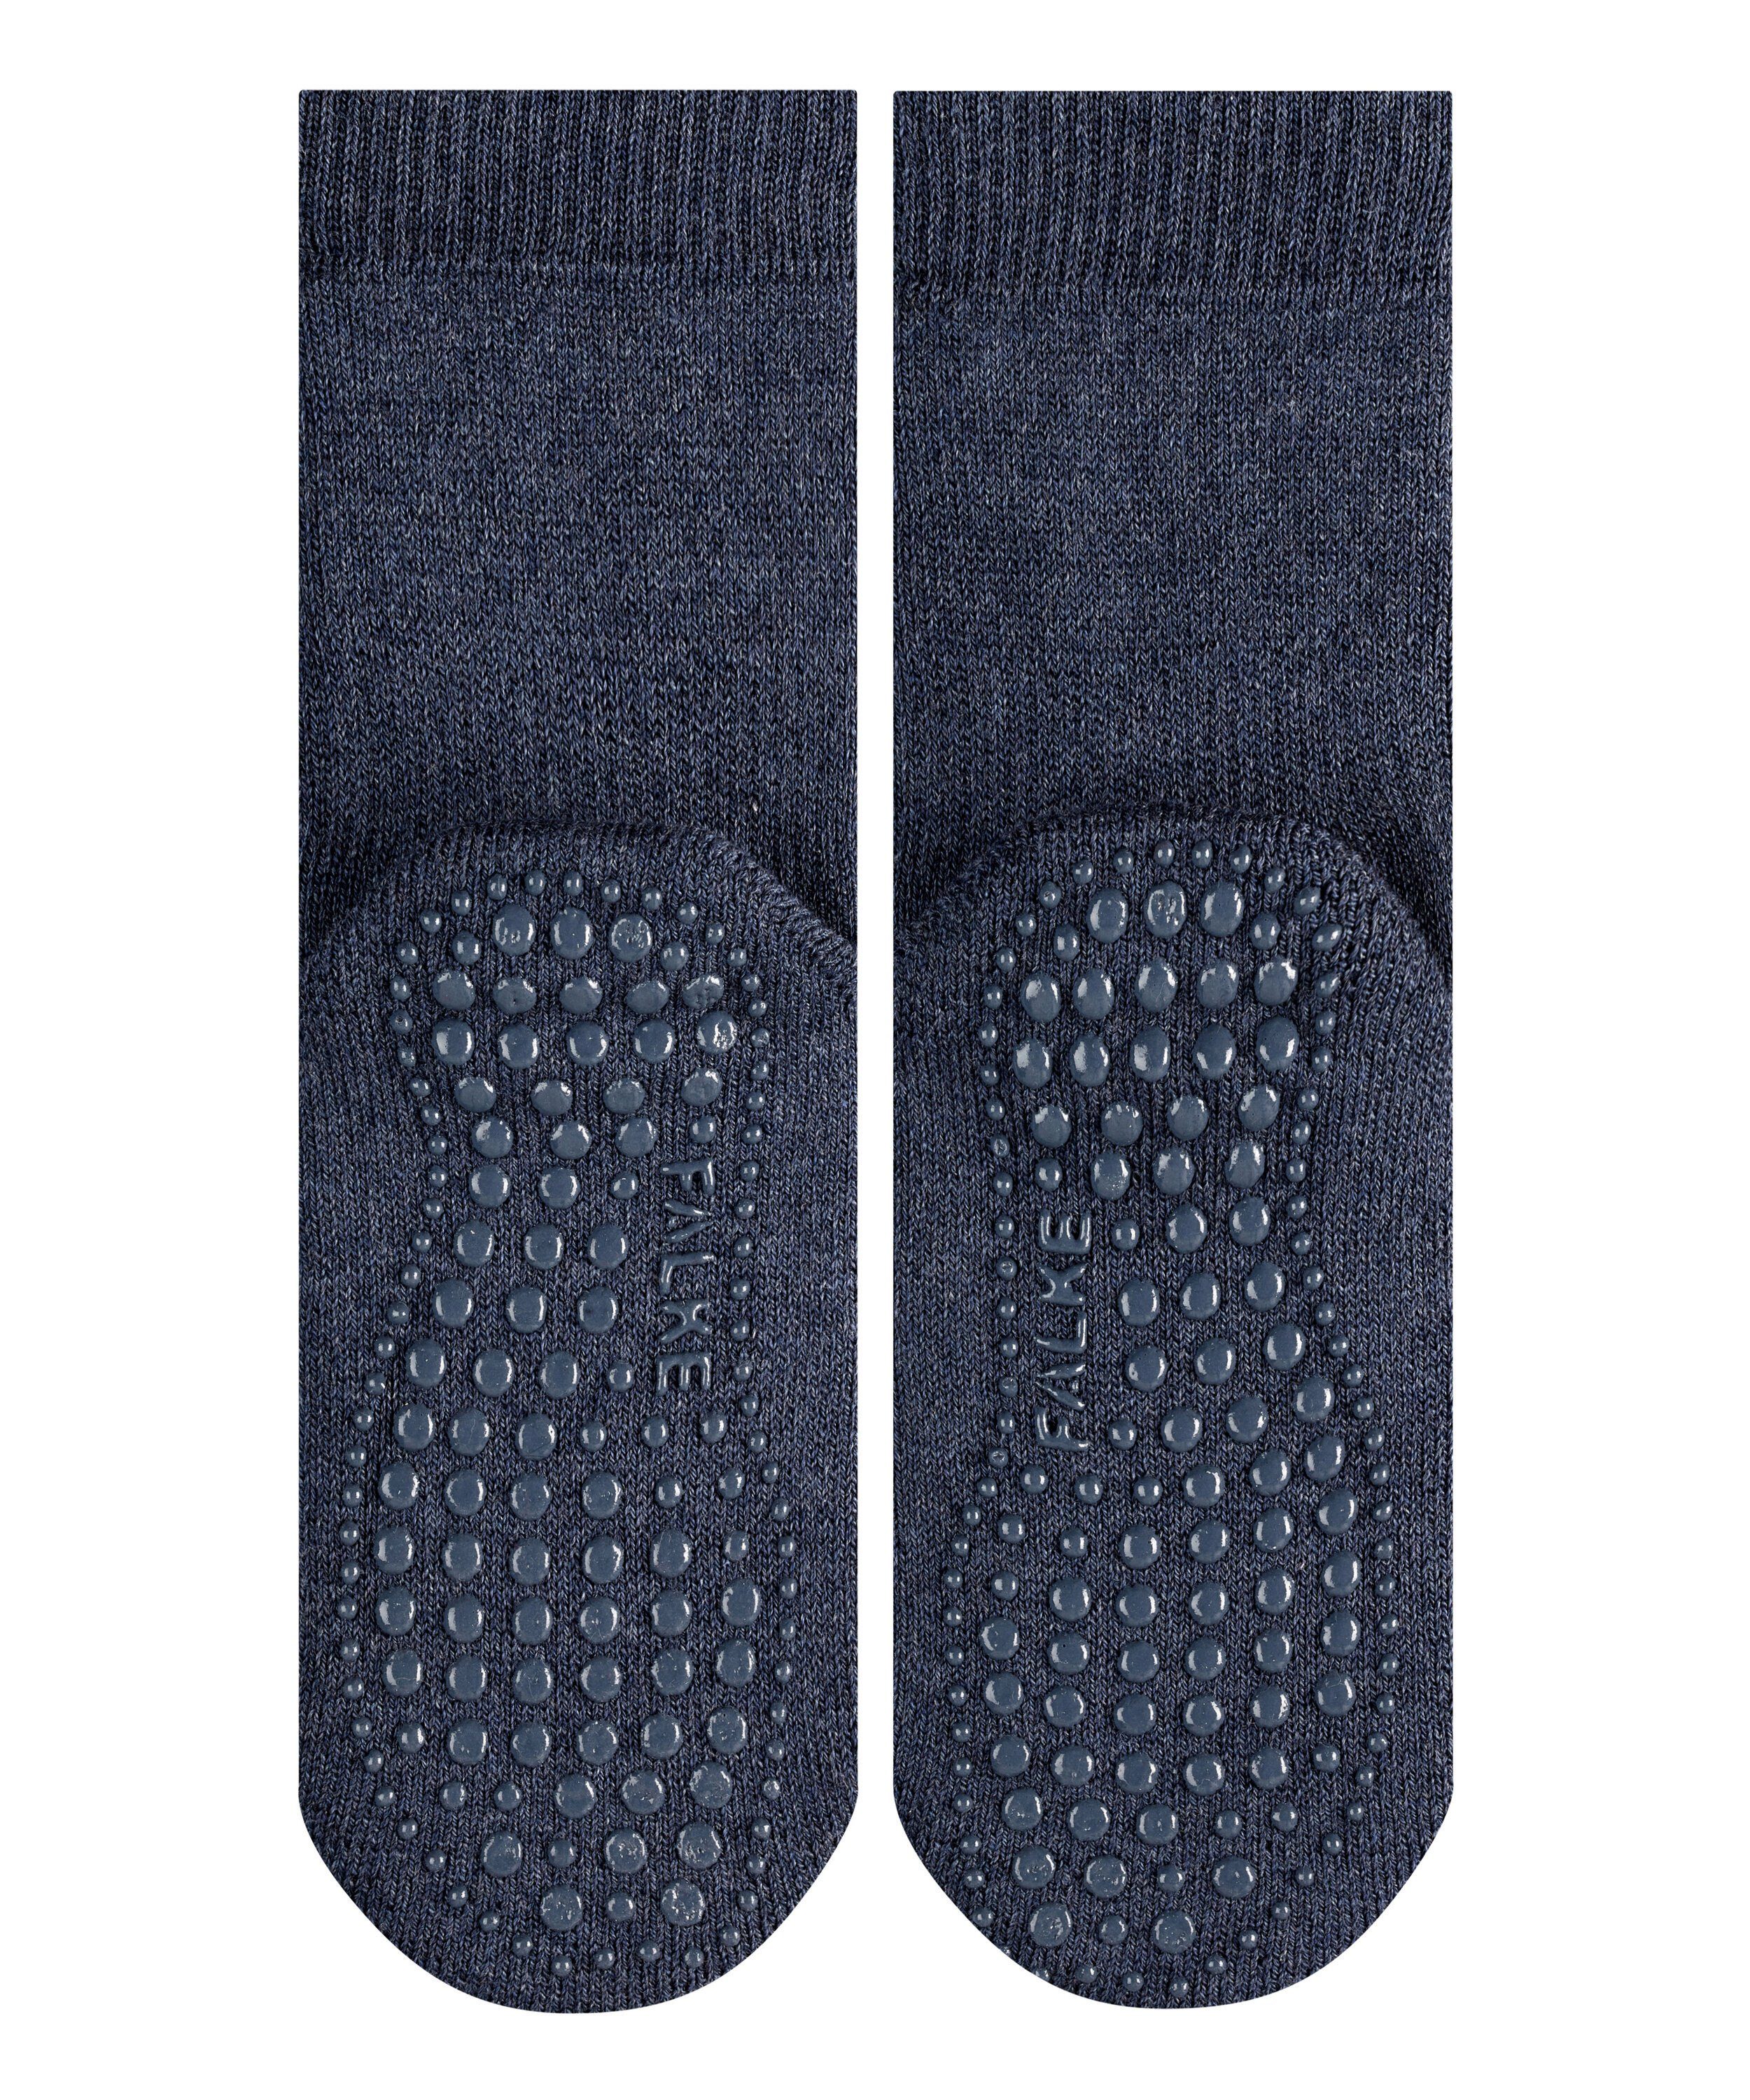 Socken (1-Paar) FALKE (6680) Catspads dark blue